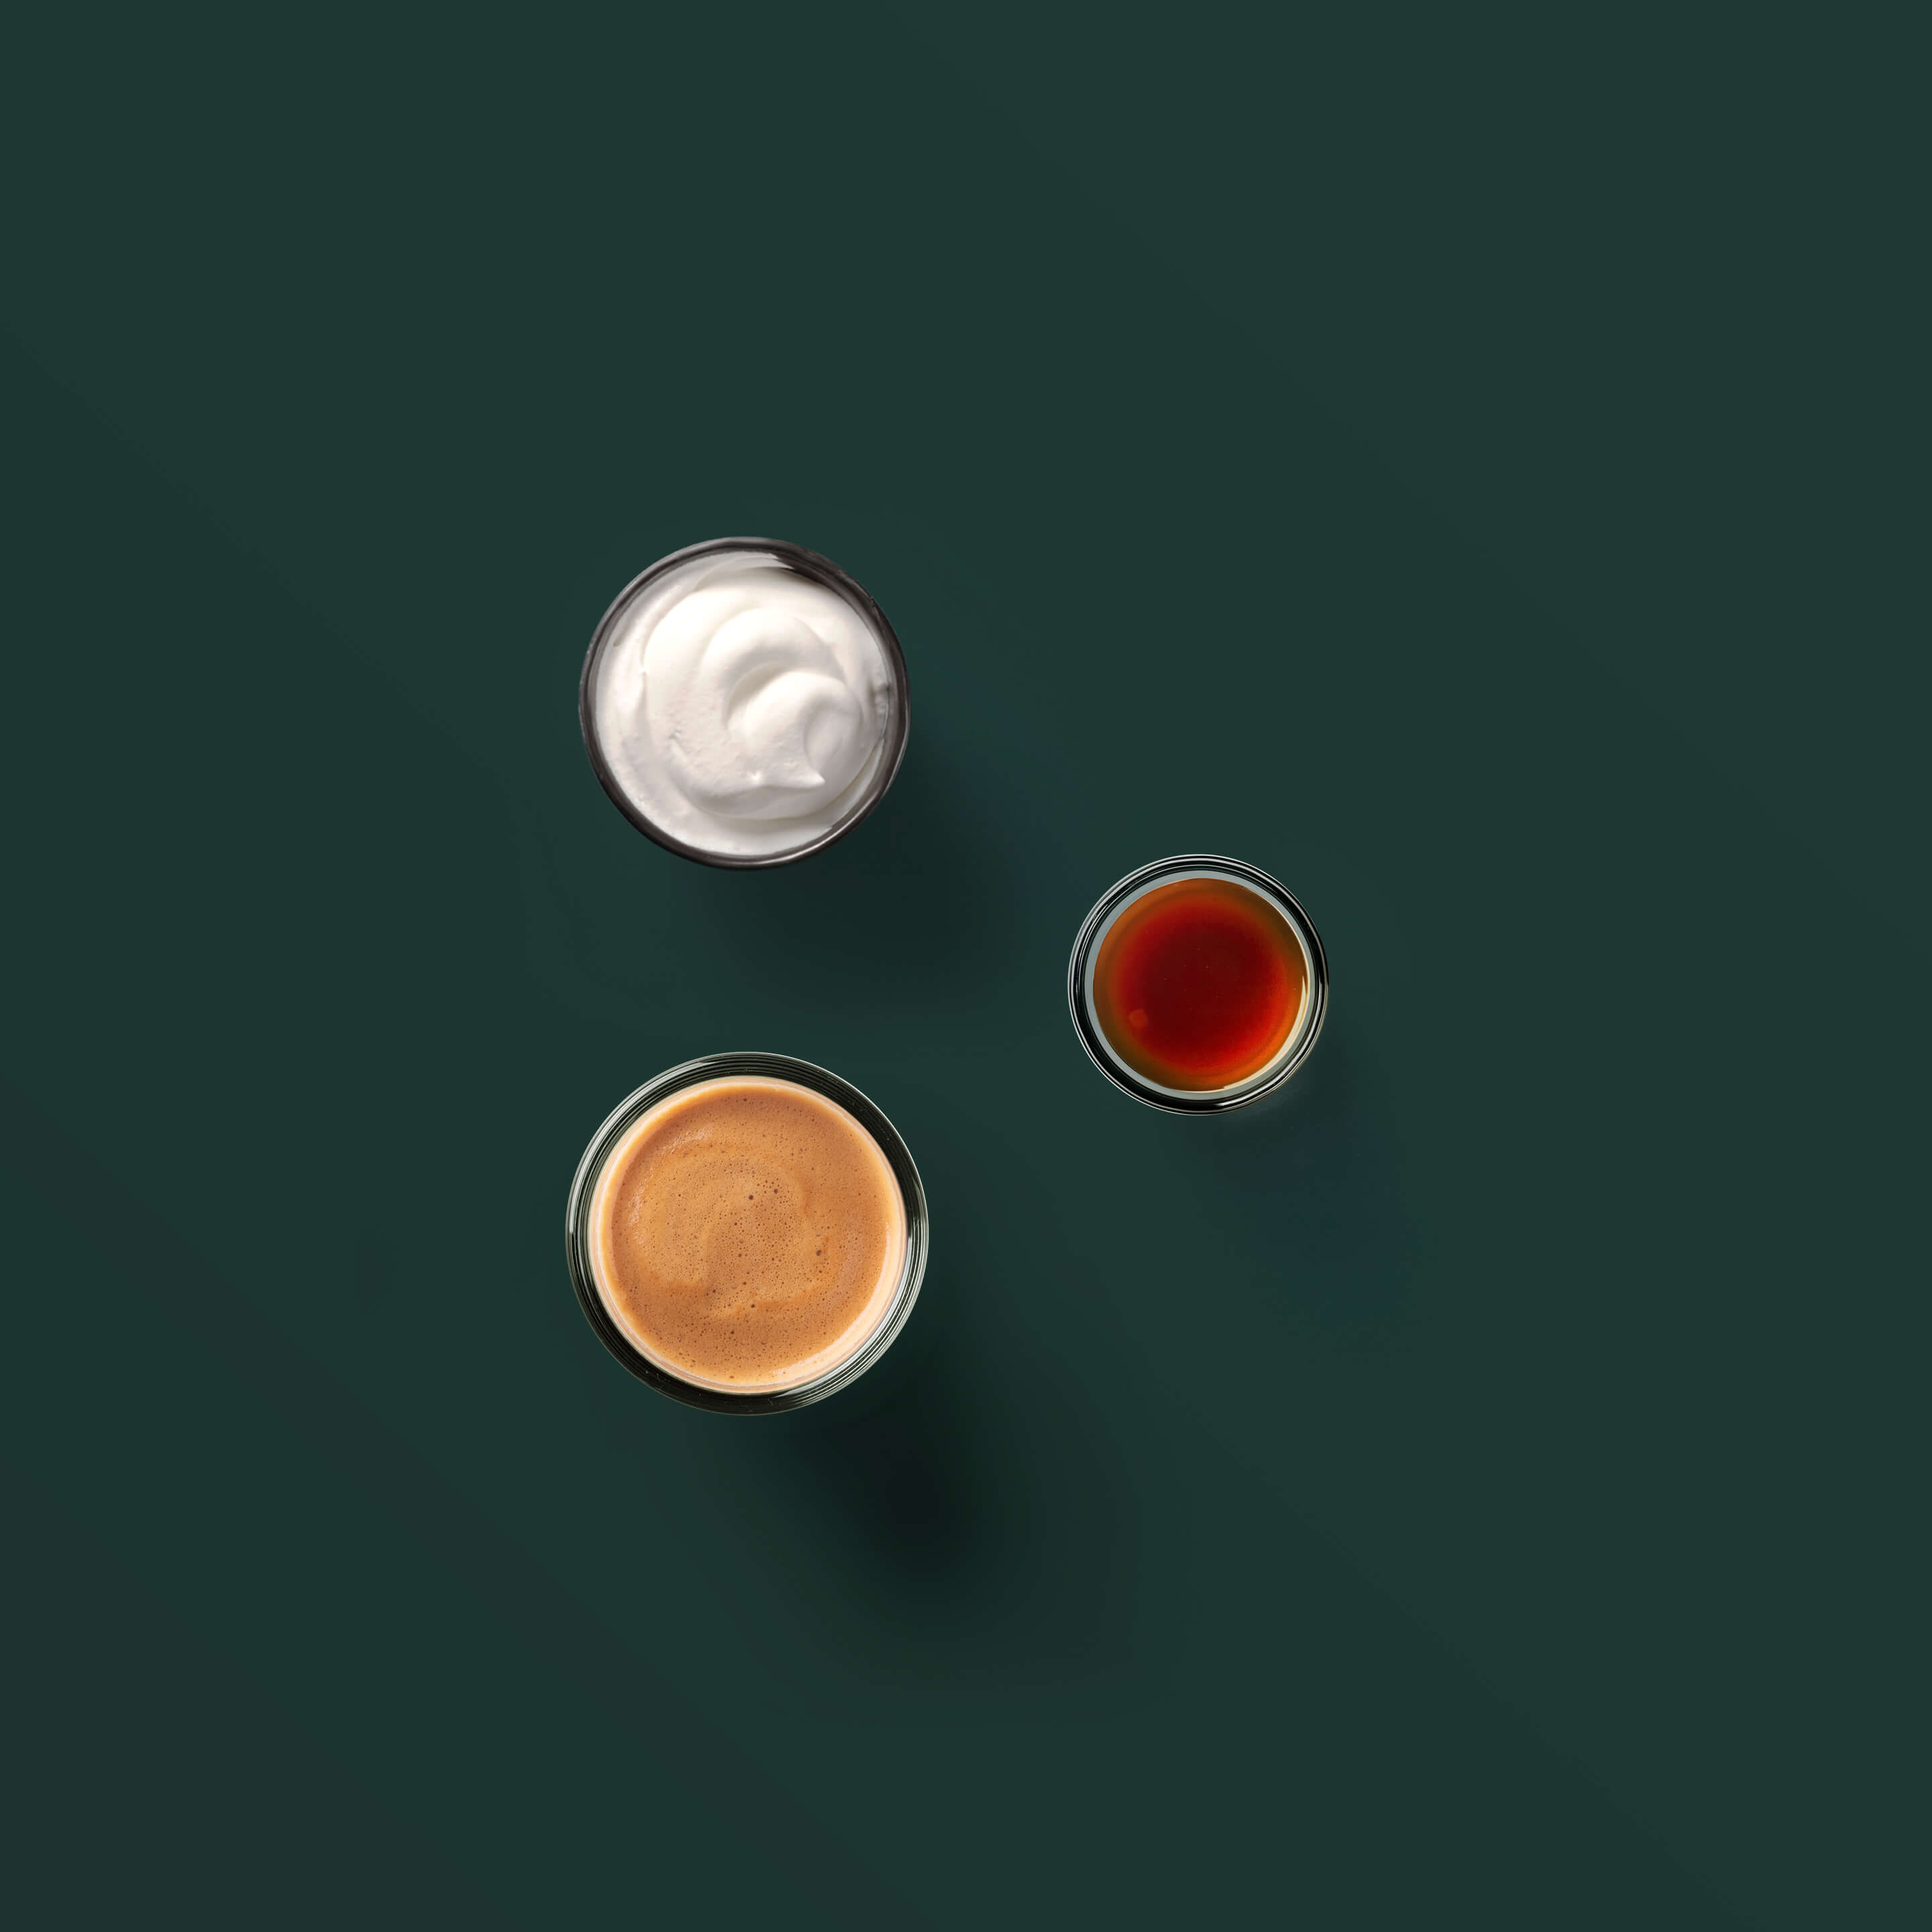 Espresso Con Panna ingredients